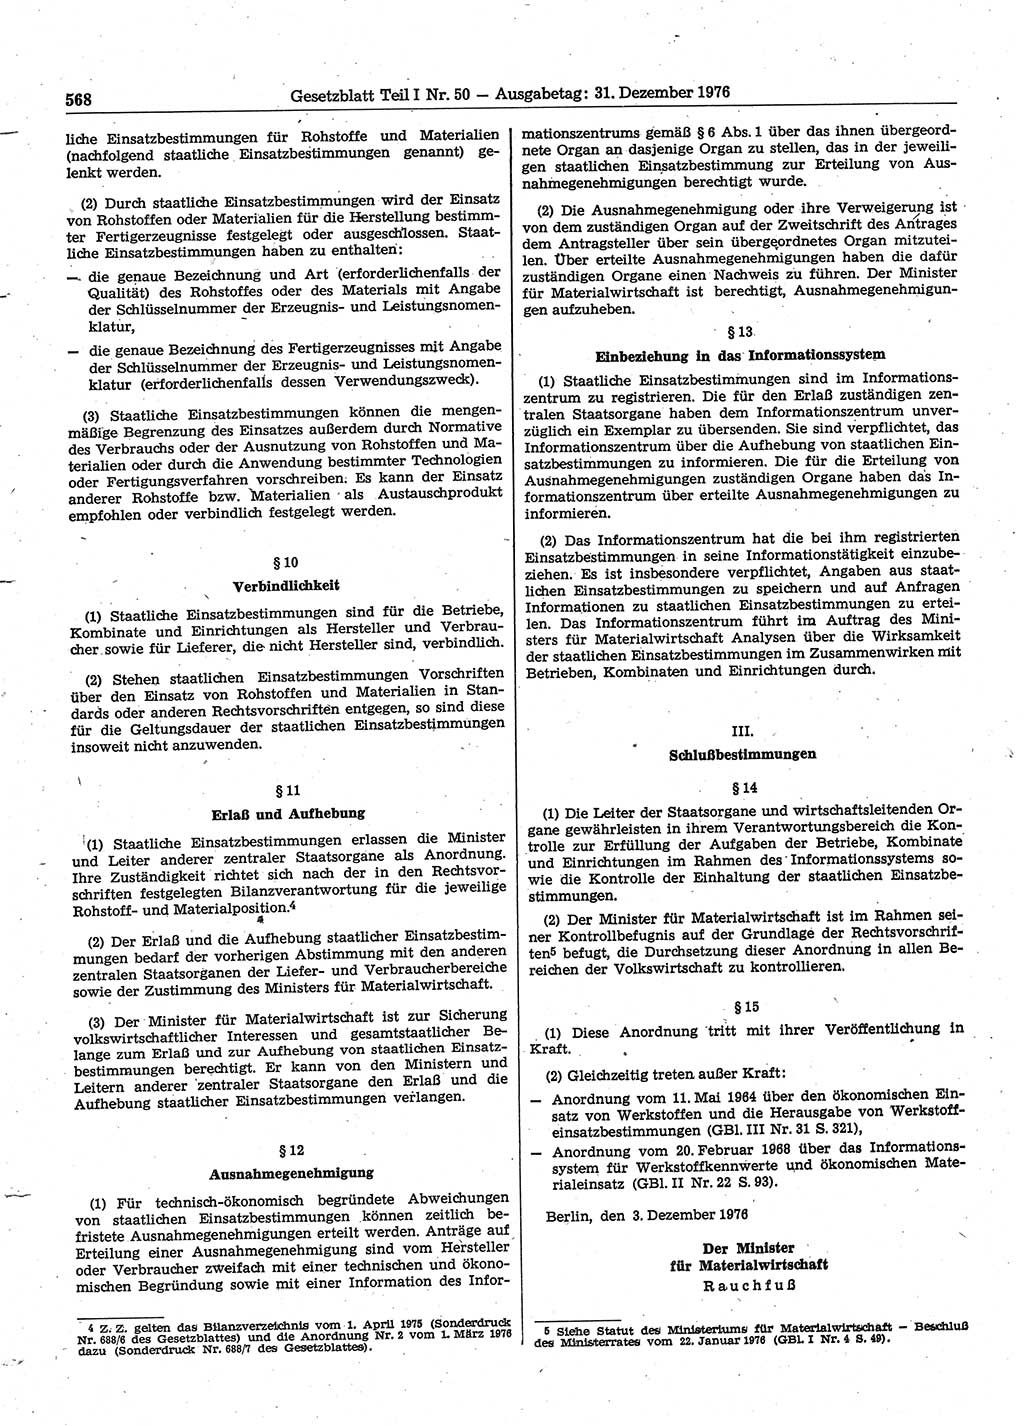 Gesetzblatt (GBl.) der Deutschen Demokratischen Republik (DDR) Teil Ⅰ 1976, Seite 568 (GBl. DDR Ⅰ 1976, S. 568)